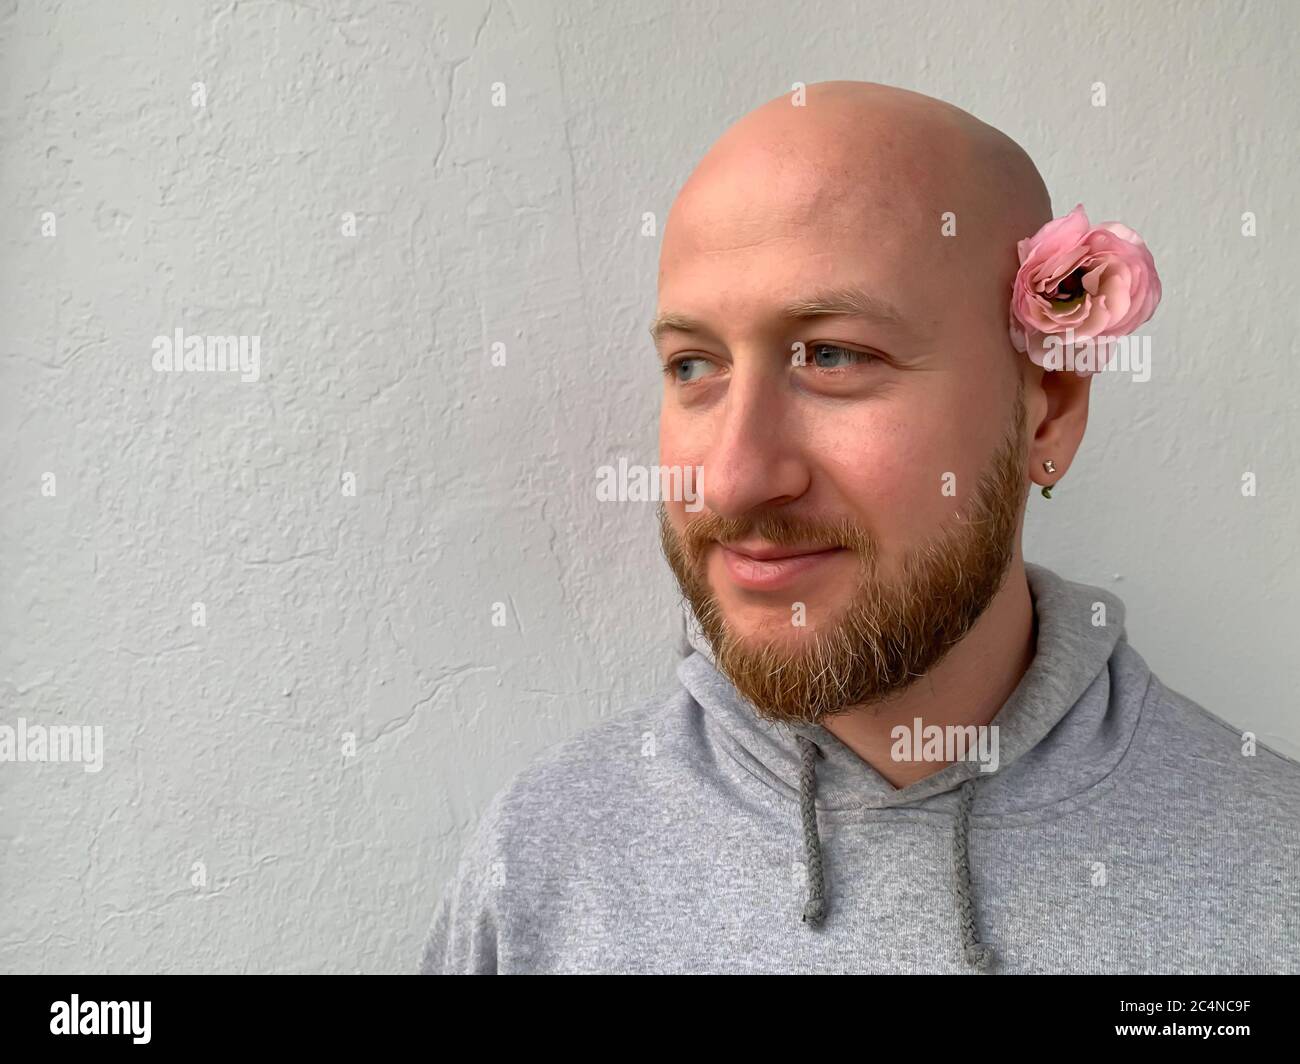 Jeune homme européen blanc beau sans cheveux homme homme avec barbe et  fleur rose derrière son oreille Photo Stock - Alamy